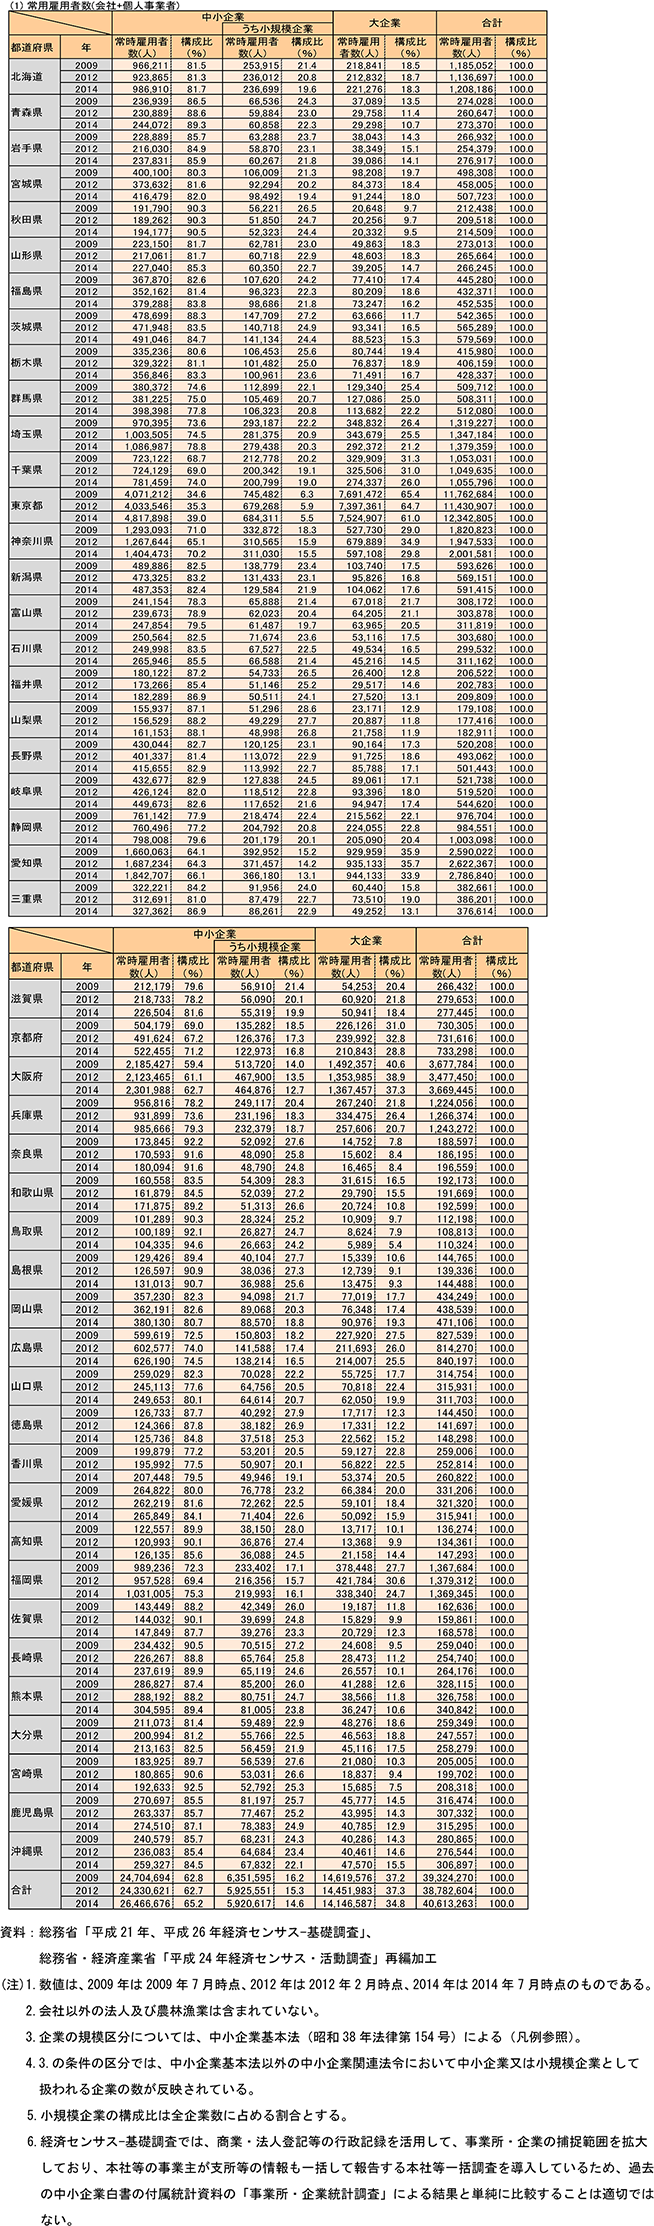 都道府県別規模別常時雇用者数（民営、非一次産業、2009年、2012年、2014年）